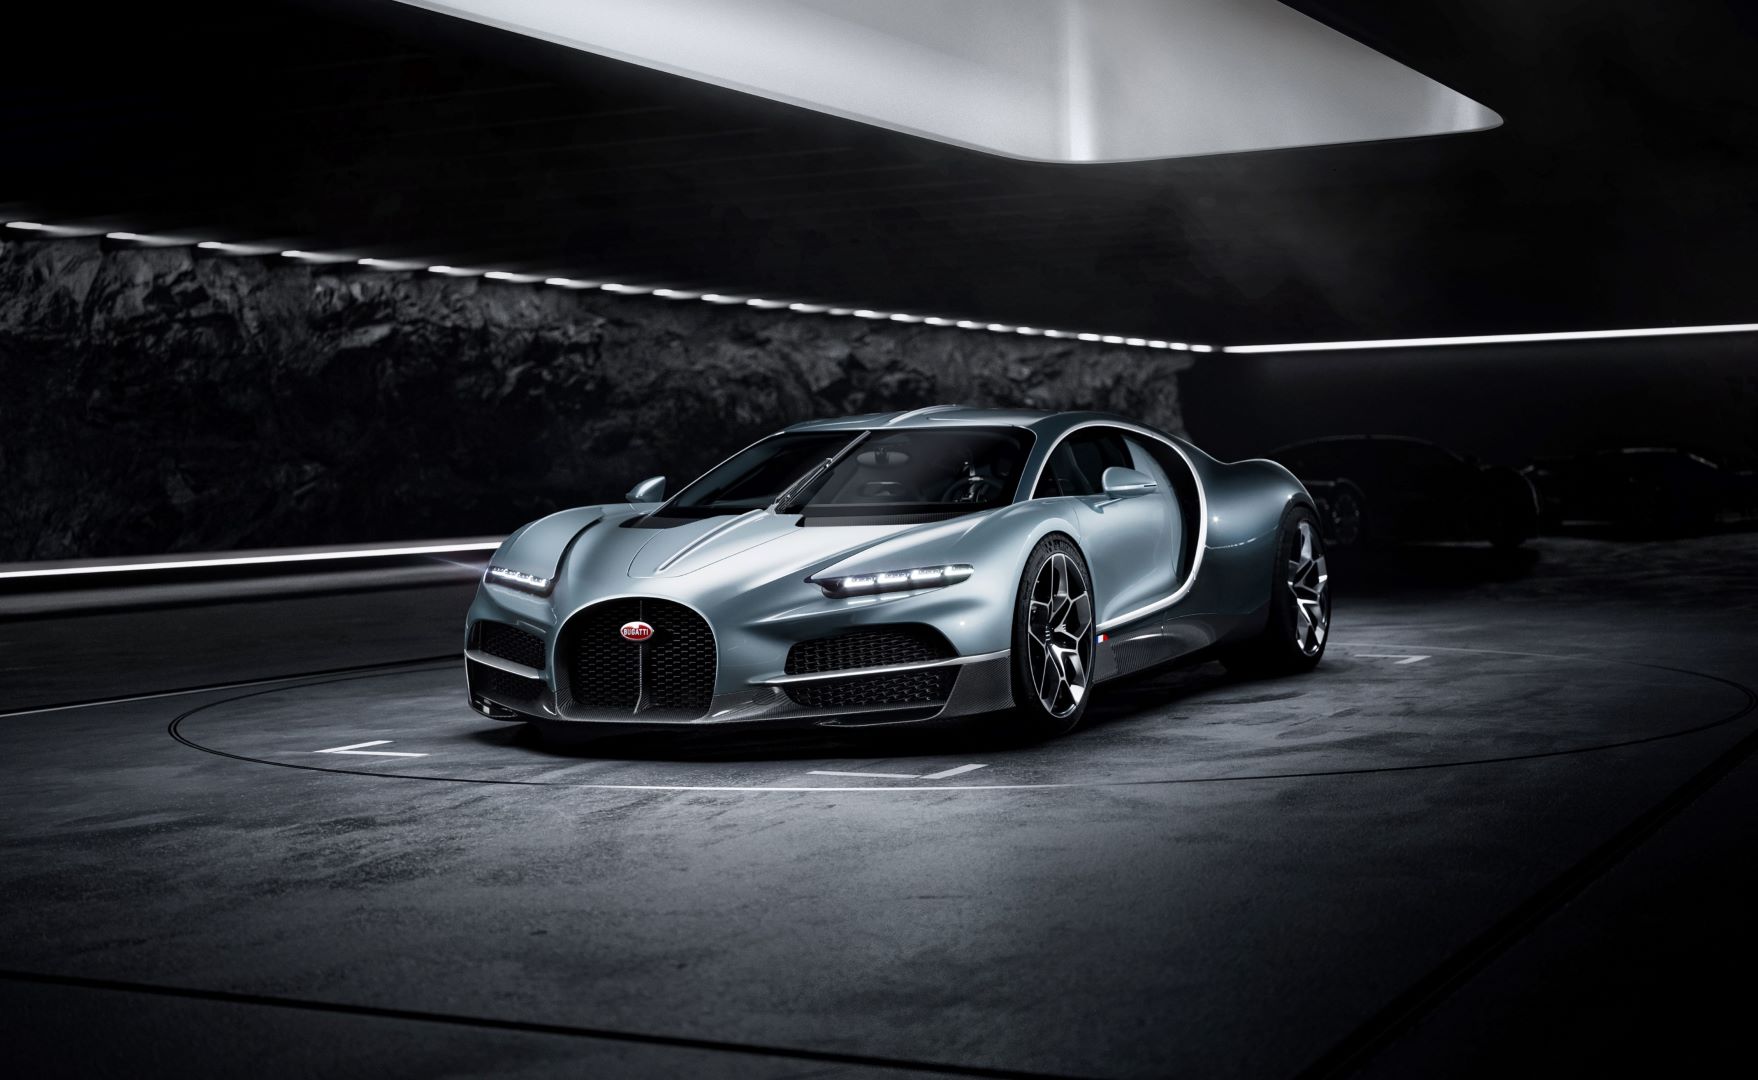 بوغاتي توربيون Bugatti Tourbillon: أيقونة خالدة في عالم السيارات